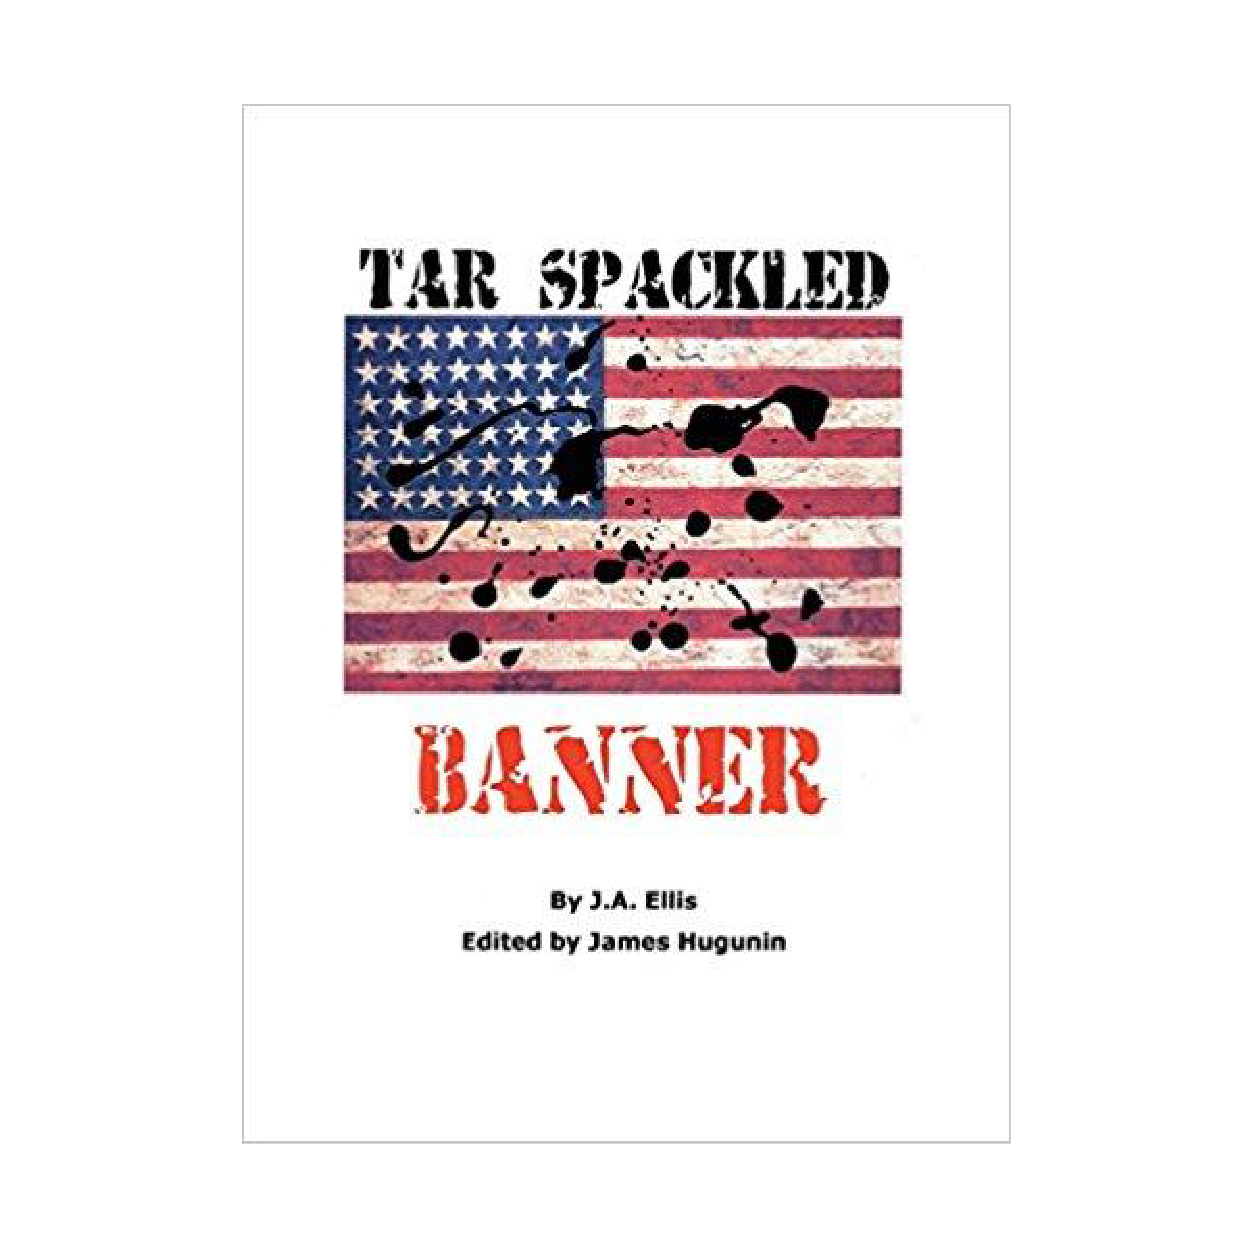 Tar Spackled Banner (Novel) by James R. Hugunin